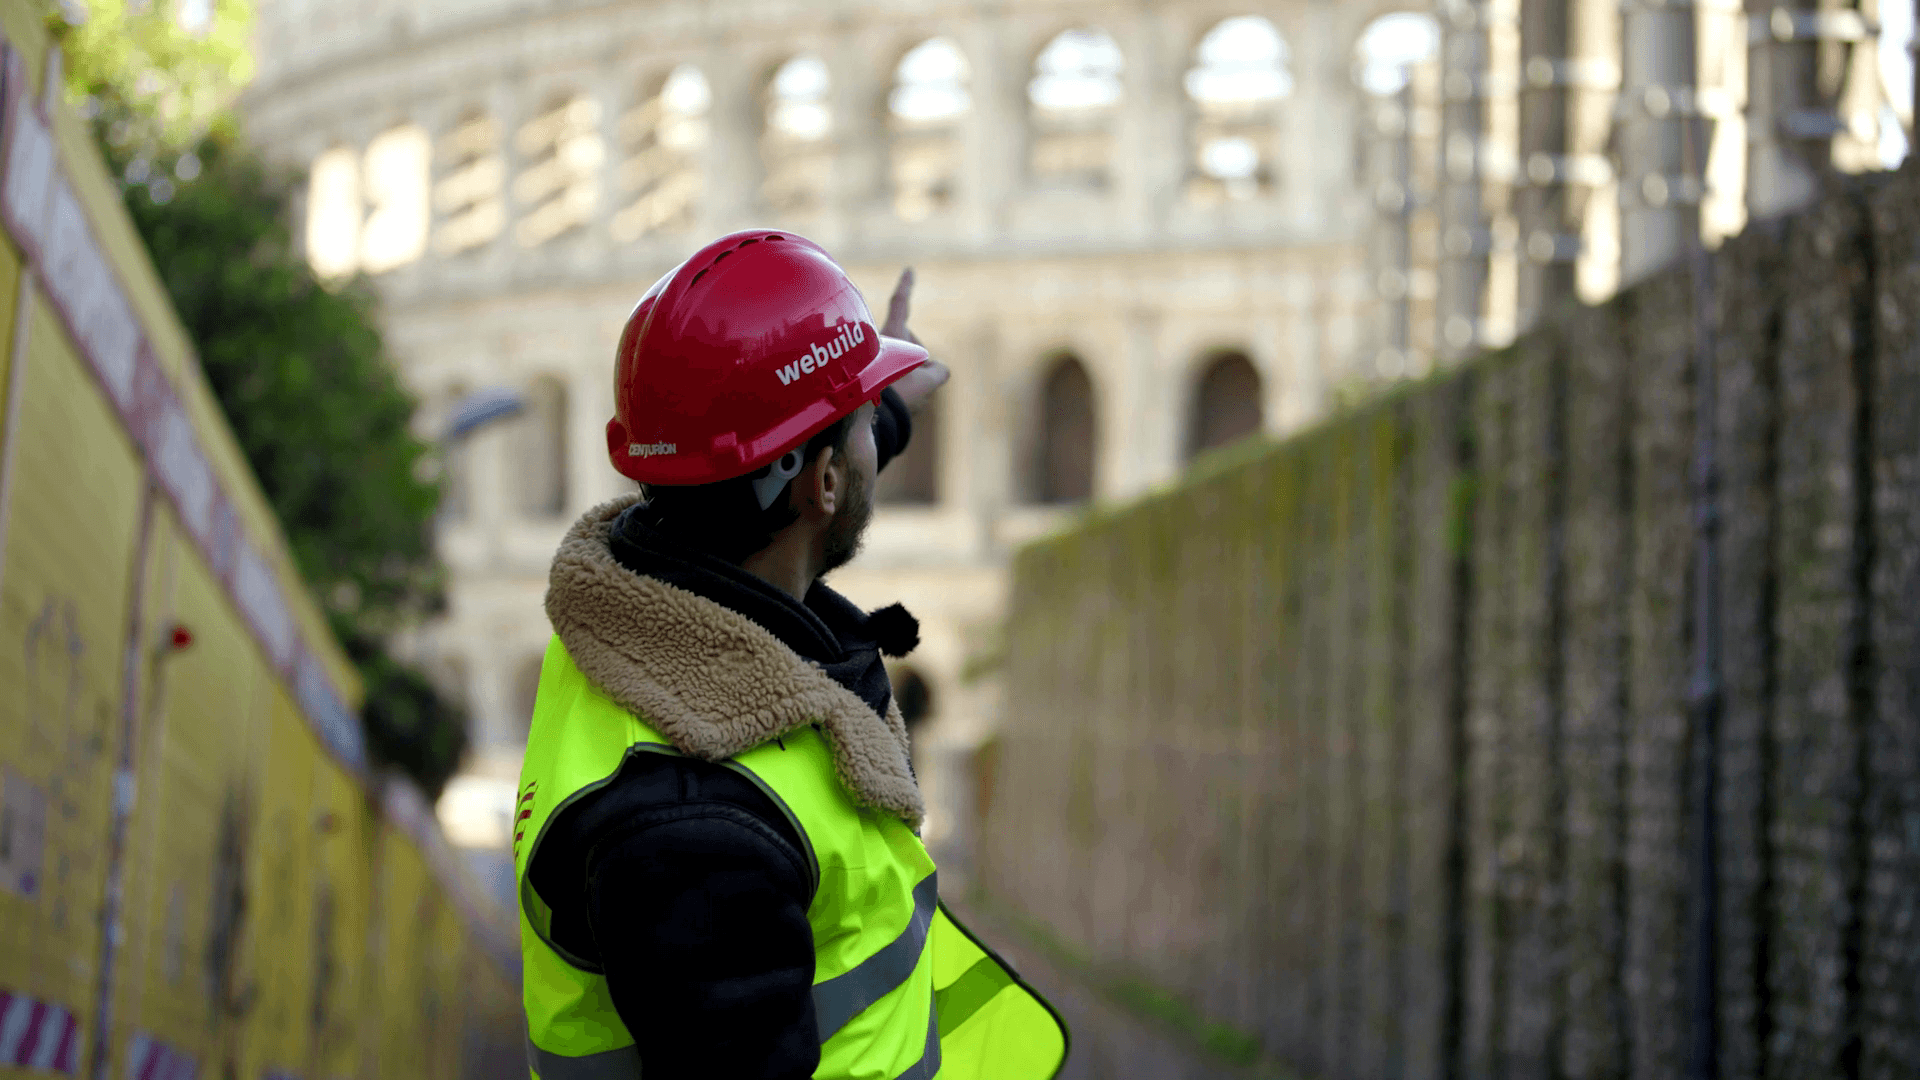 Uno scavo vista Colosseo – Metro C, Stazione Colosseo - Fori Imperiali - Art Rider, Episodio 1